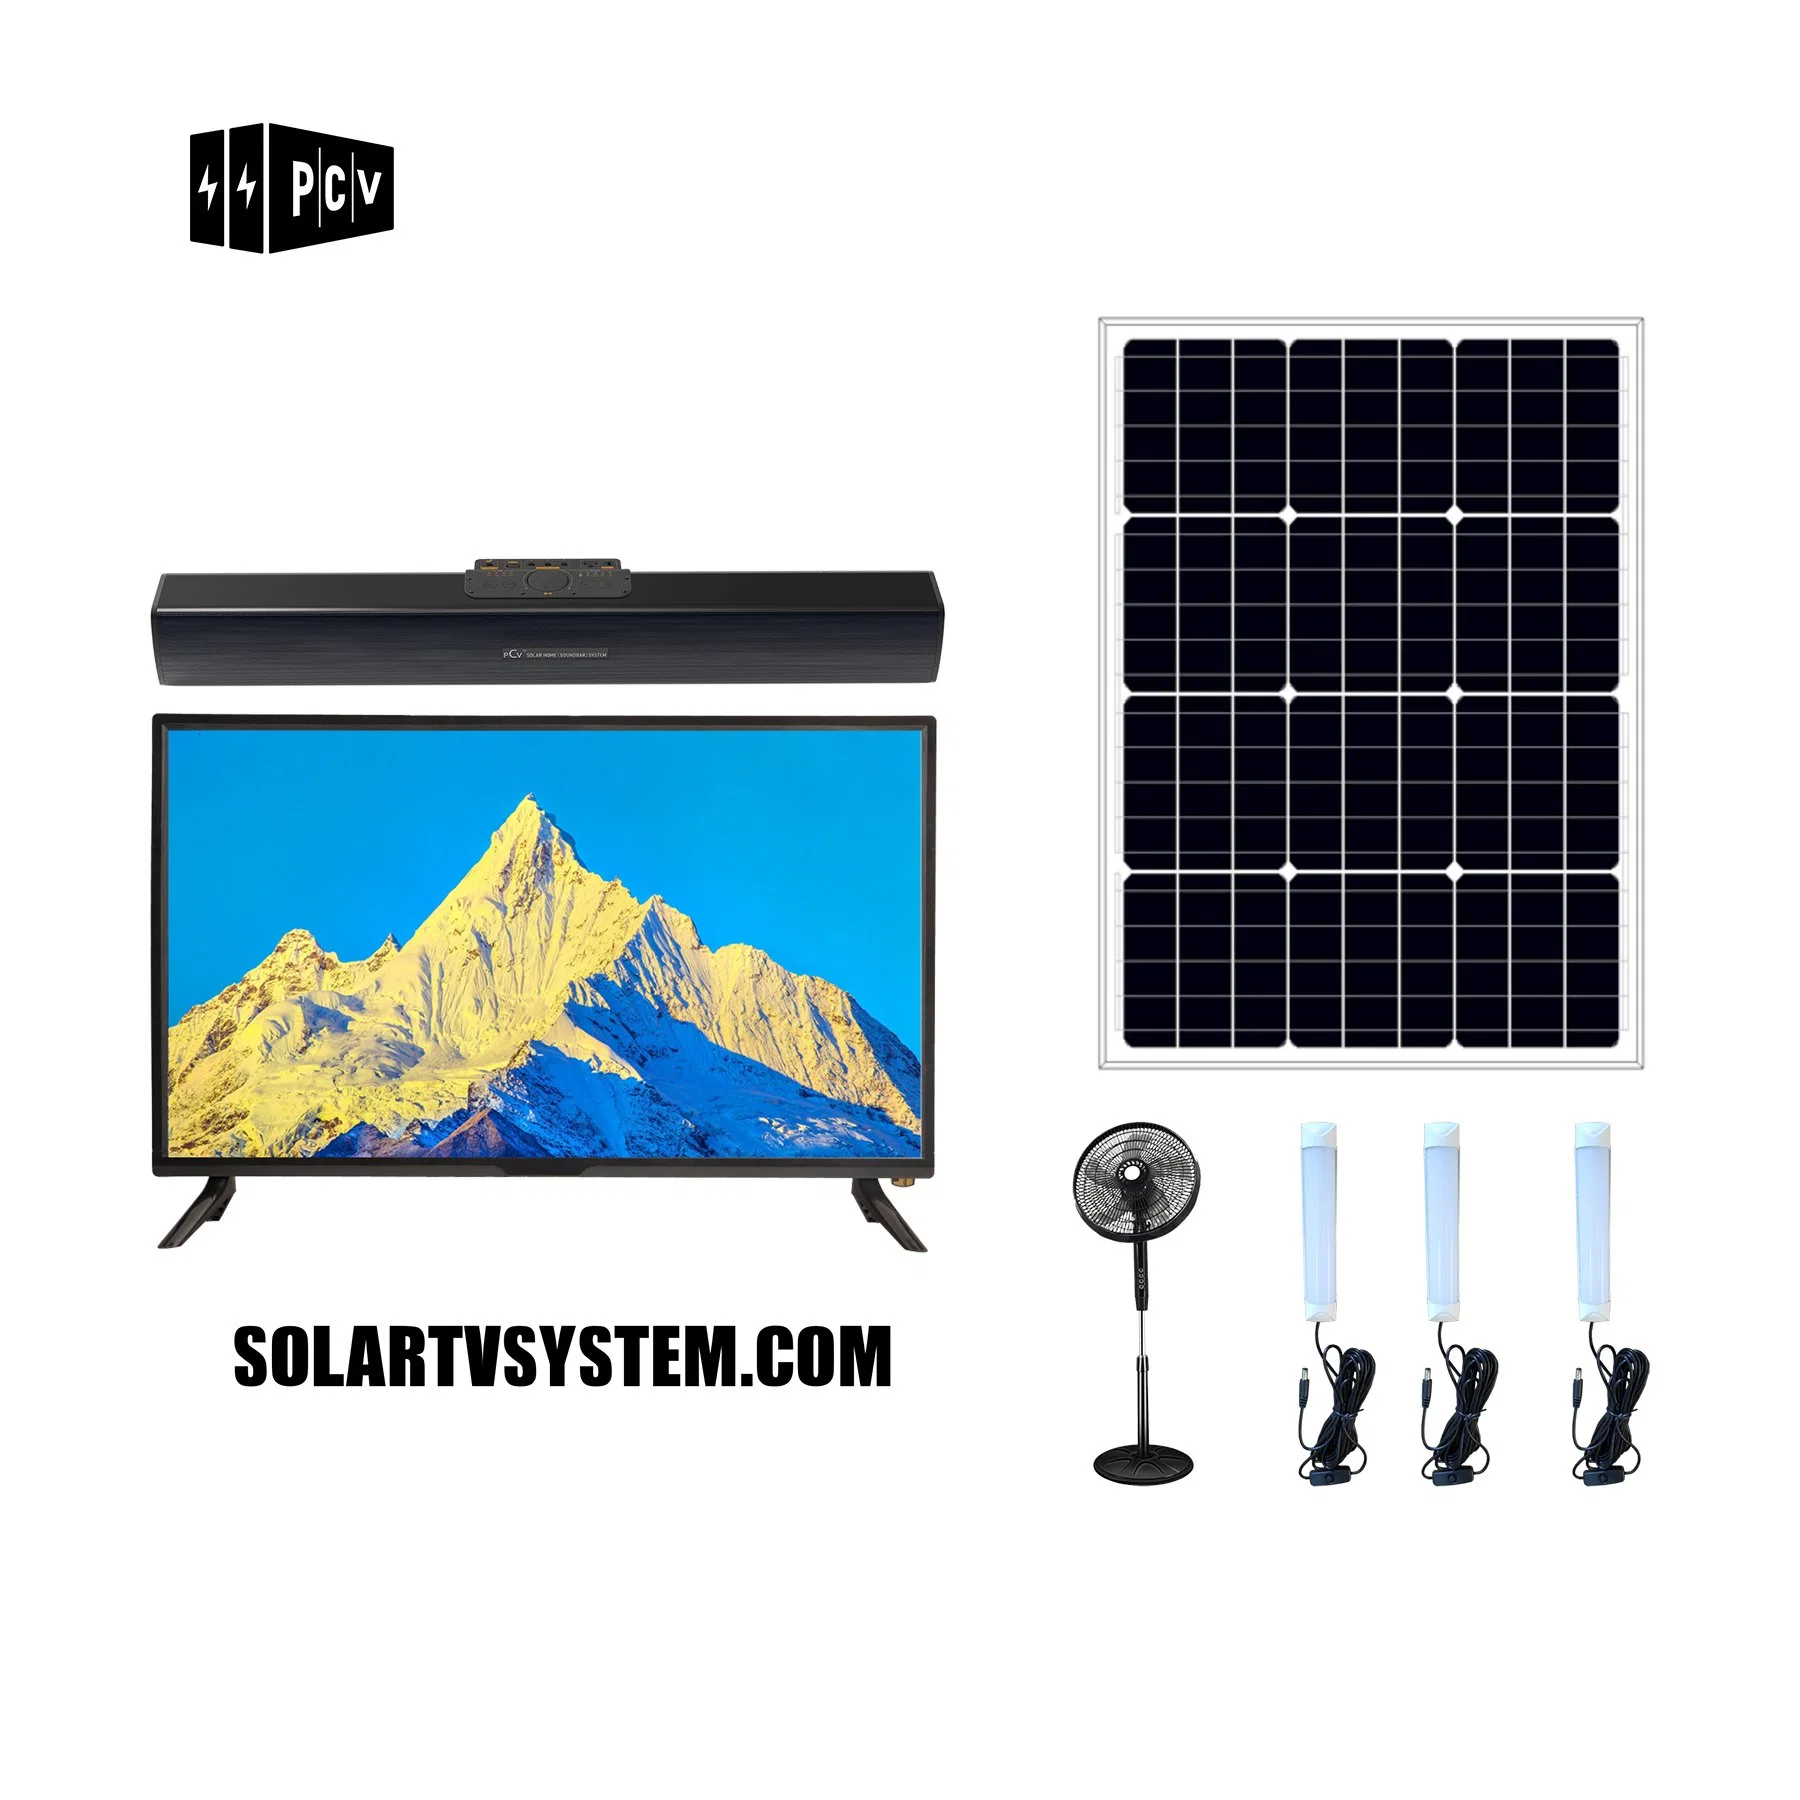 Pcv лучшая цена аудио и видео для использования солнечной энергии солнечного ТВ-системы для домашнего освещения, телевизора и постоянного тока DC электровентилятора системы охлаждения двигателя